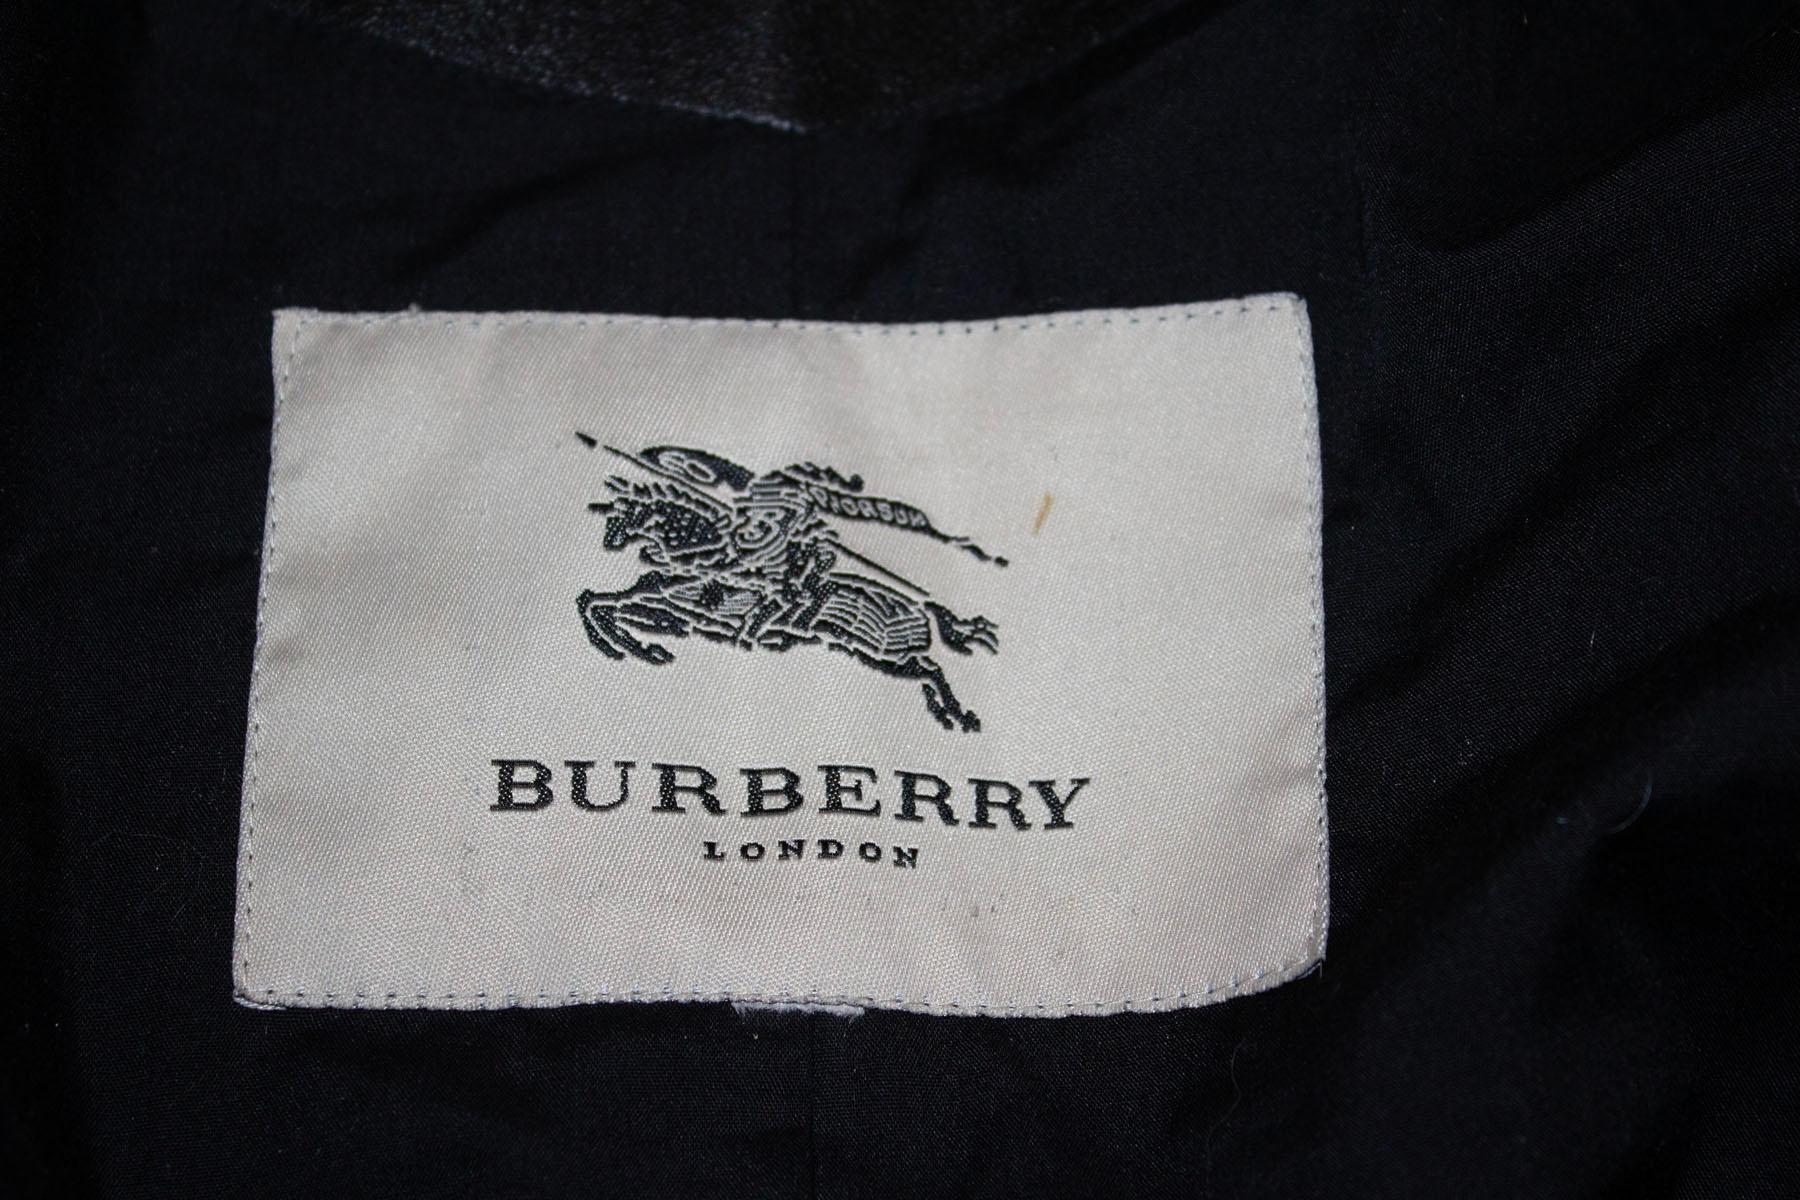 Une magnifique veste en cuir noir de la firme britannique Burberry. Comme on peut s'y attendre, le cuir est d'une qualité exceptionnelle. La veste est dotée d'une ouverture frontale zippée et de poches zippées. Il est doté de cerceaux de ceinture à